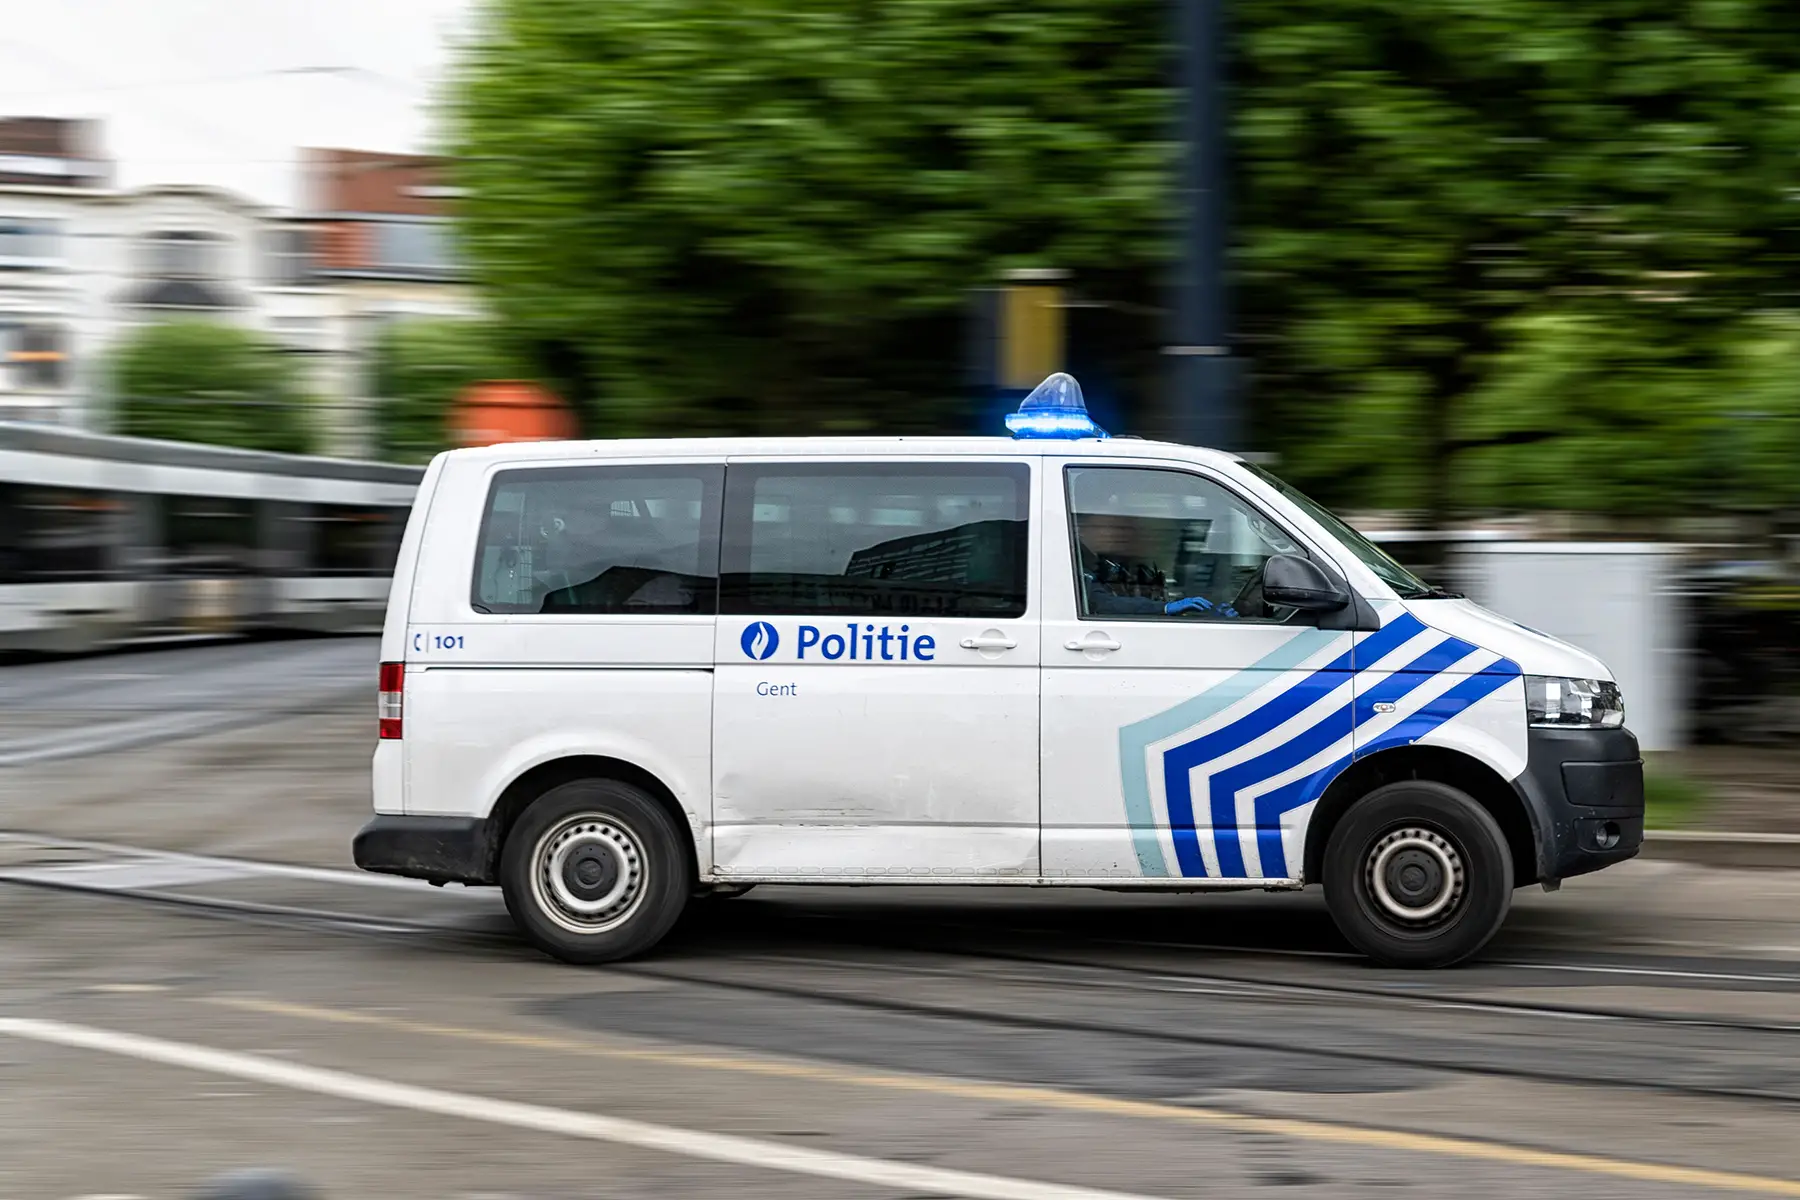 Police van in Gent, Belgium